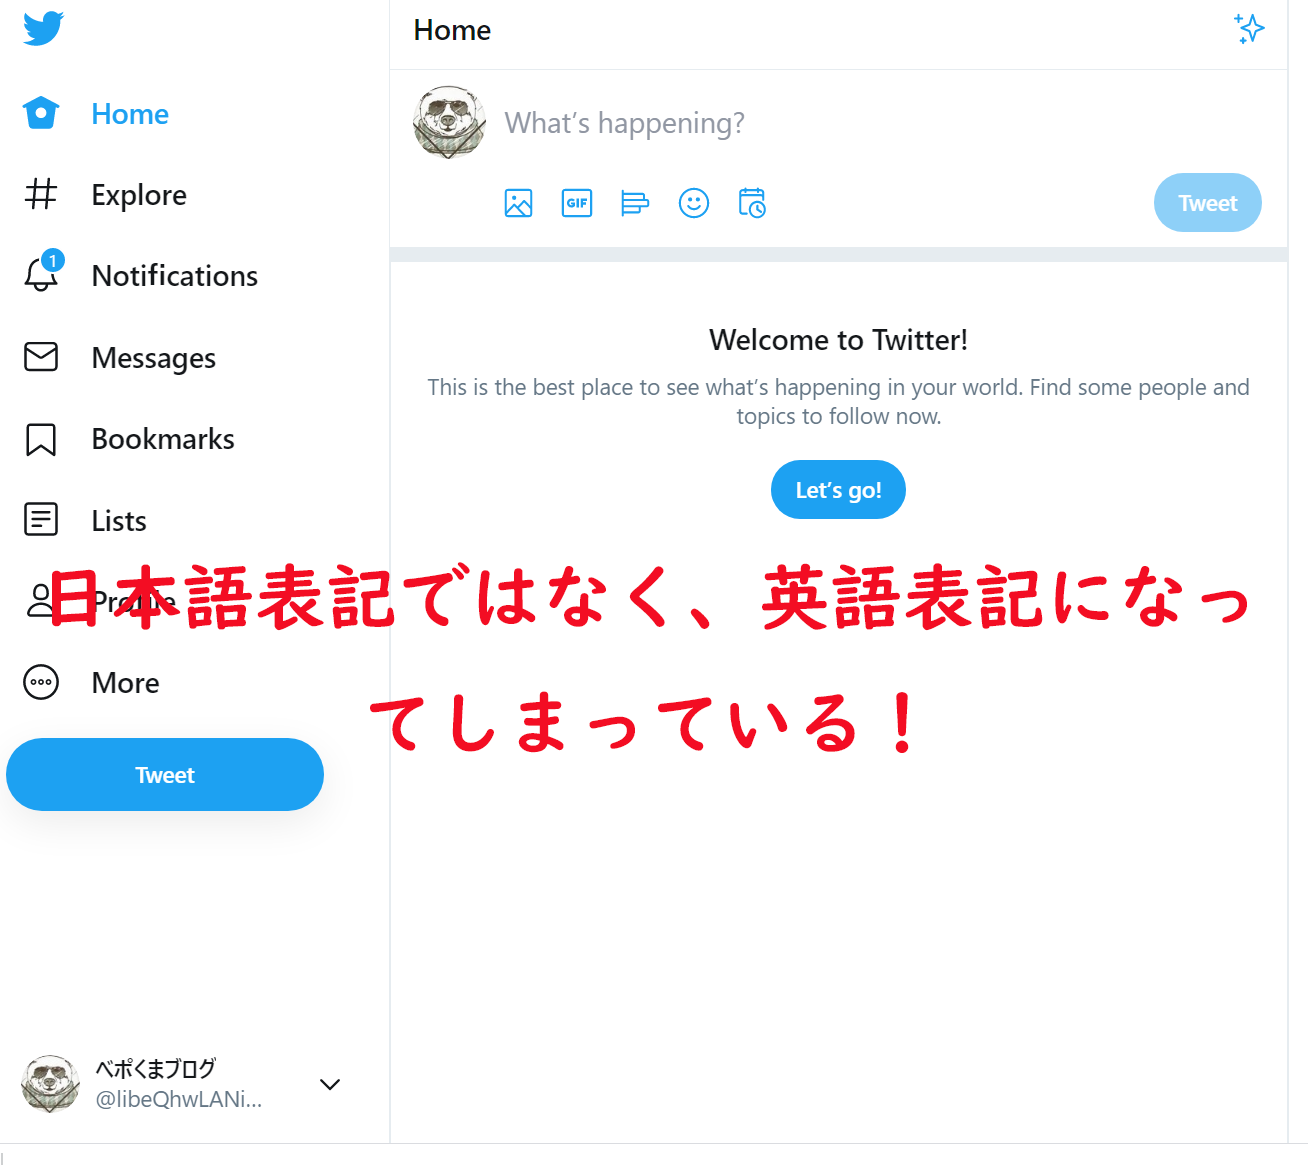 Twitterでの言語表記が日本語ではなく英語になってしまっていることがある